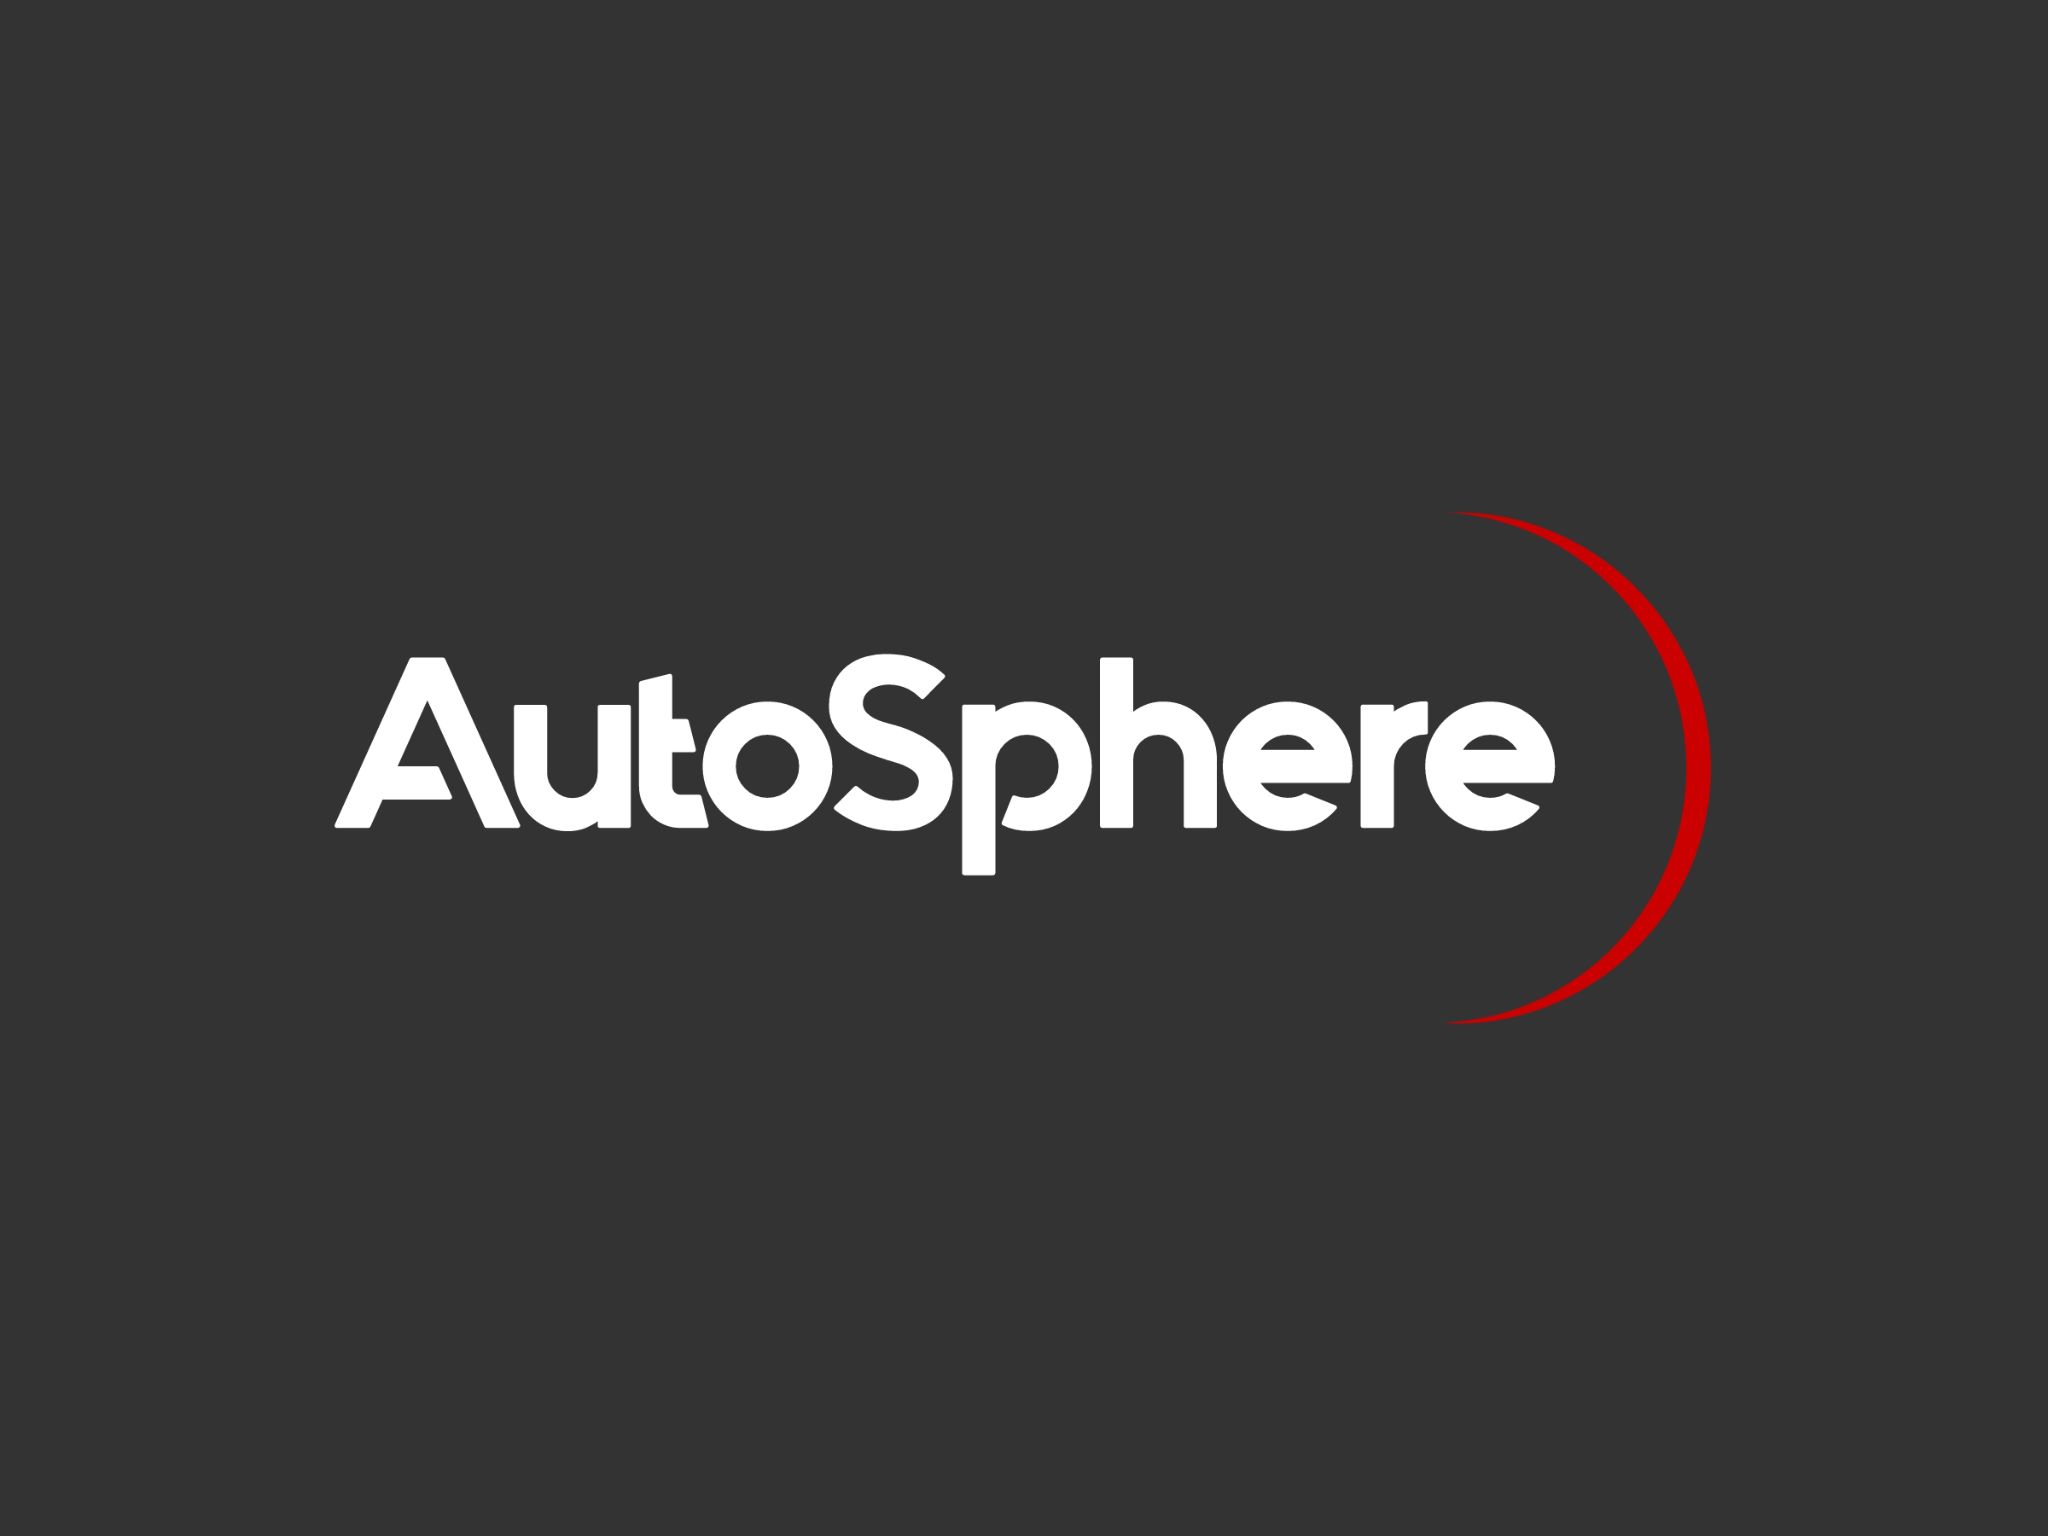 Autosphere